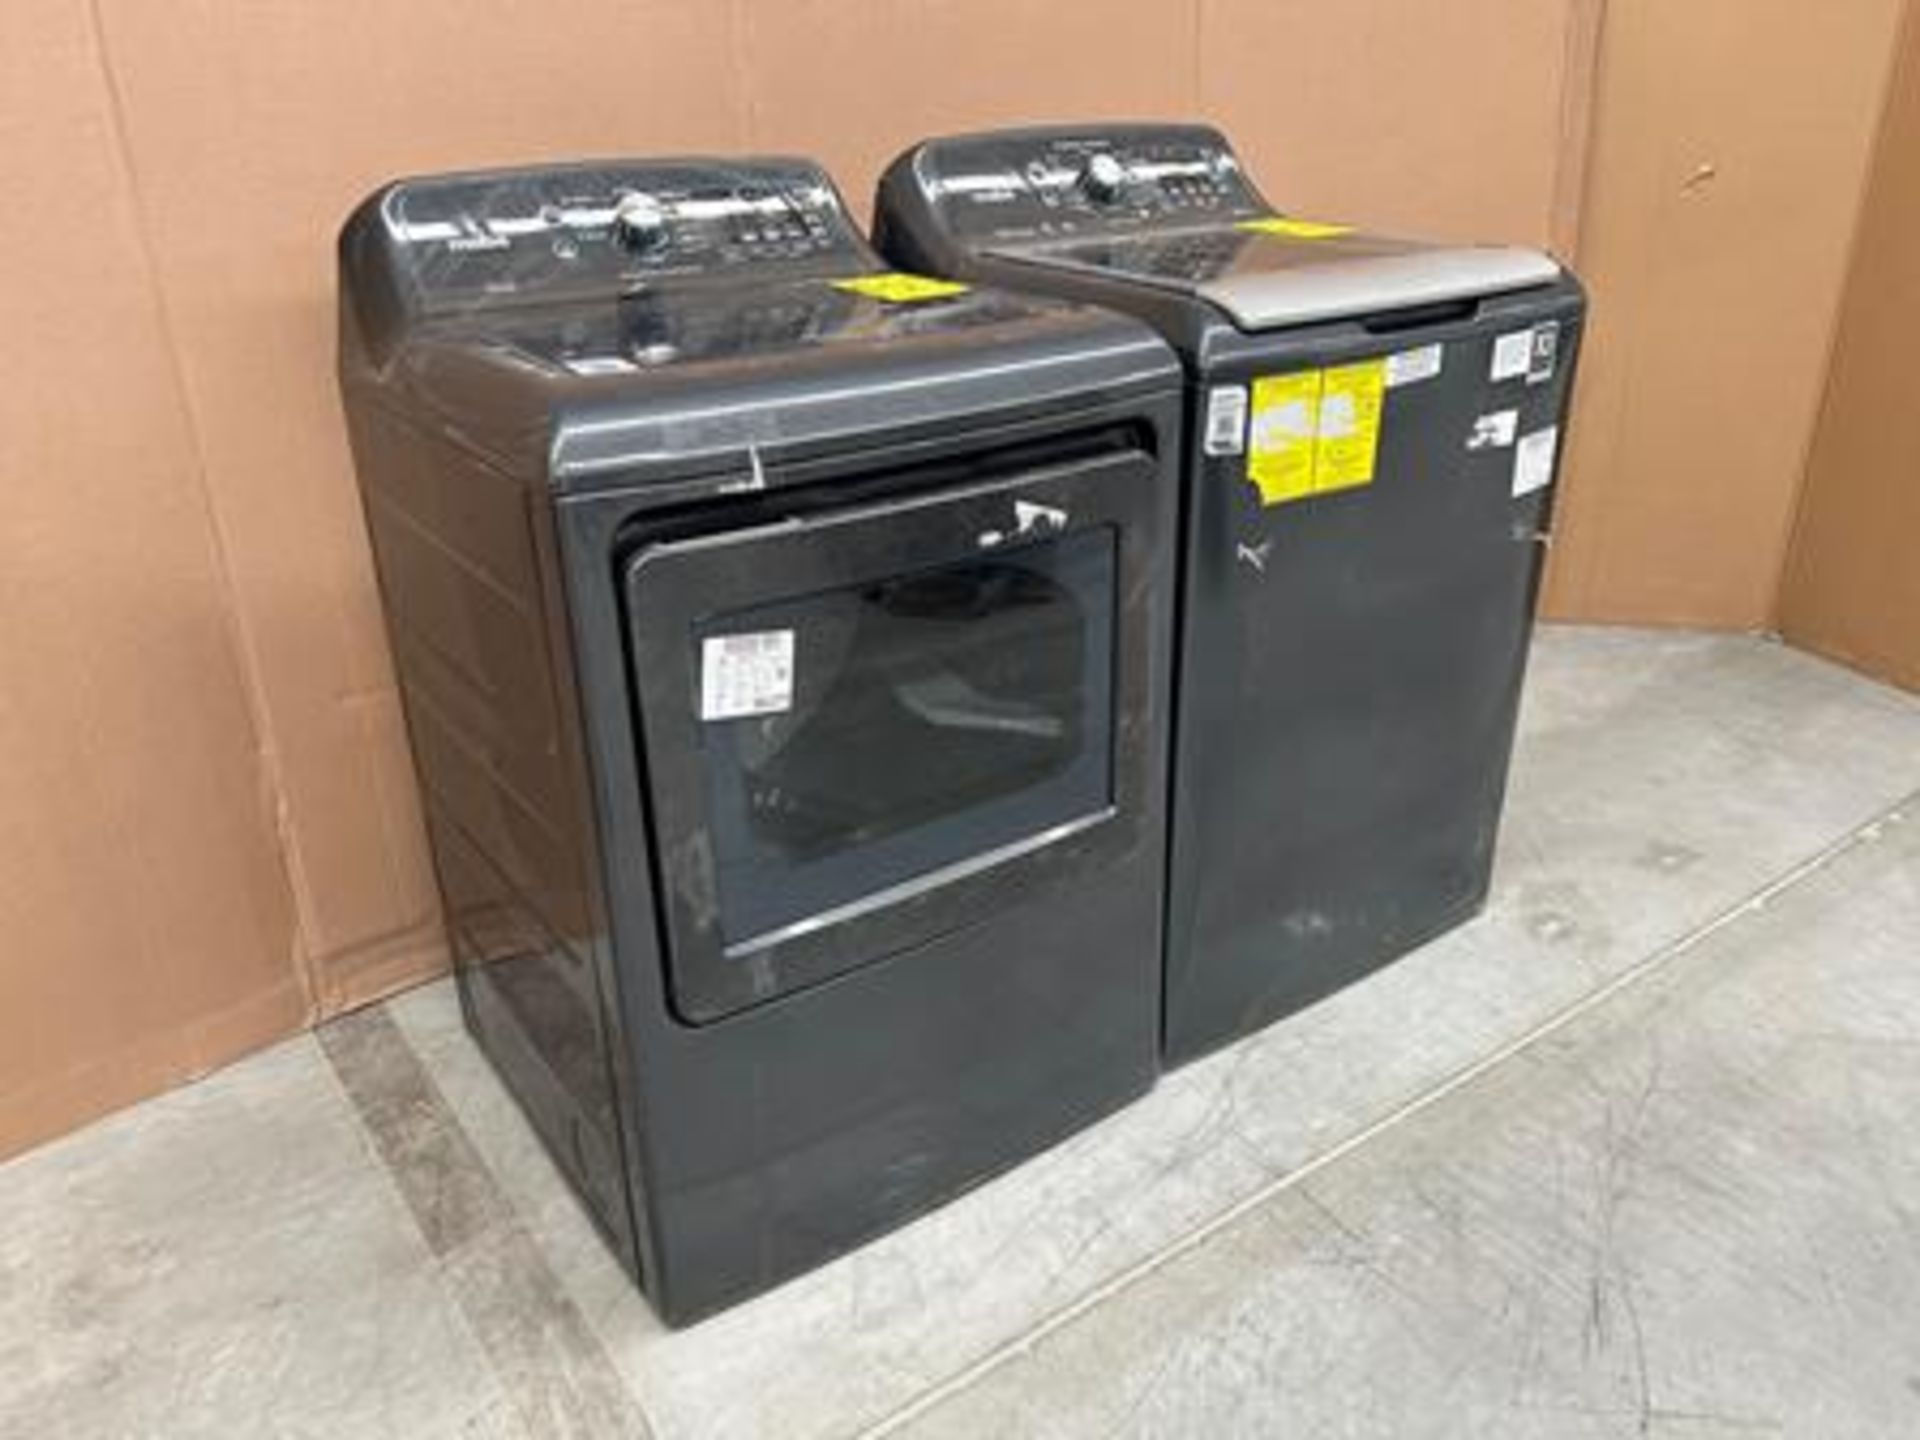 Lavadora y Secadora contiene: 1 lavadora de 24 KG Marca MABE, Modelo LMH74201WDB10, Serie 18418, Co - Image 2 of 6